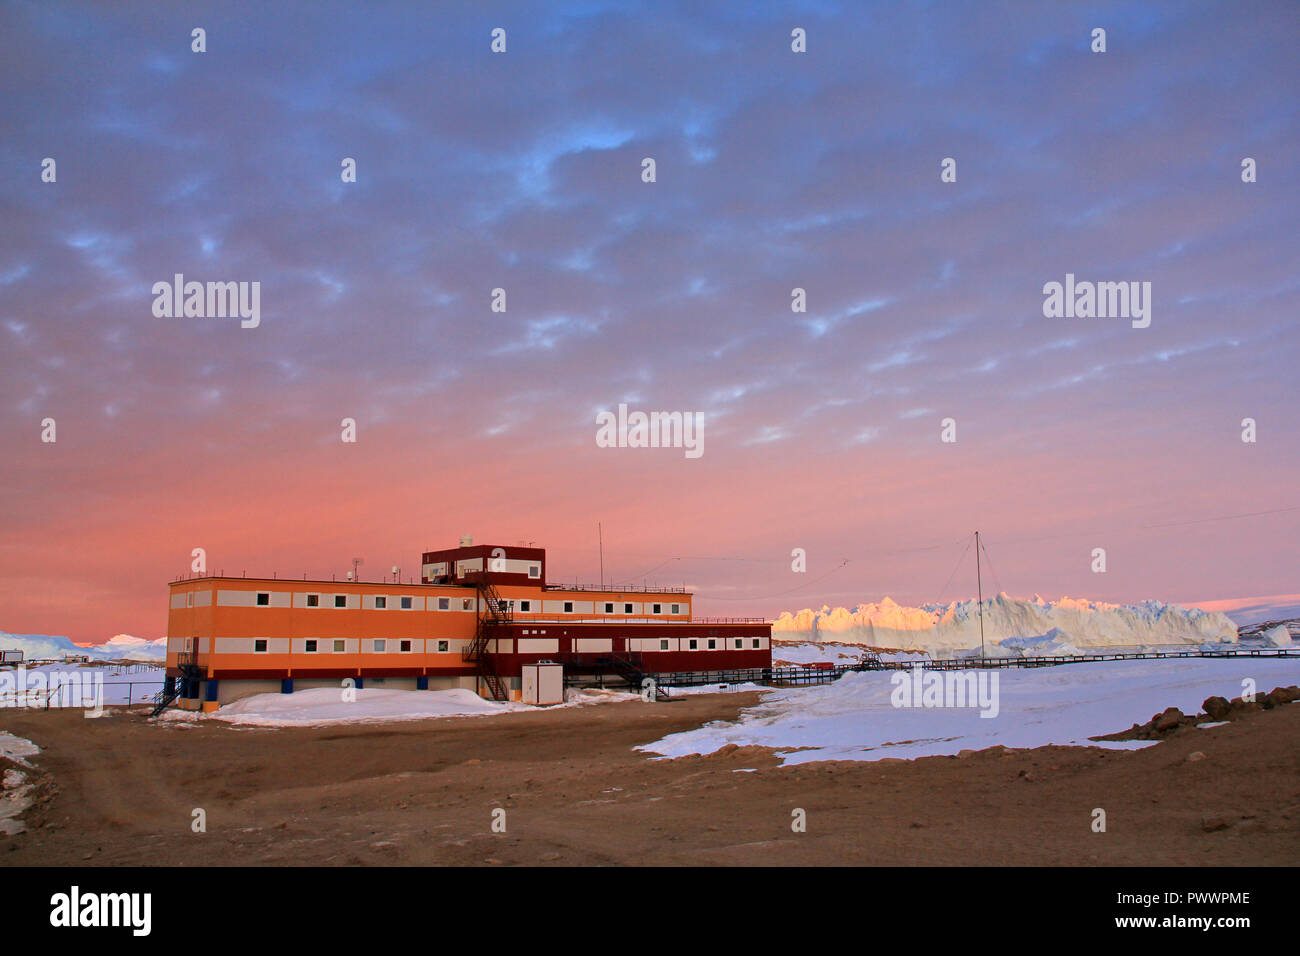 Les progrès réalisés, l'Antarctique, 04 Janvier 2017 : Panorama et juste de l'air. Vue de l'océan, les icebergs et la station polaire, le relief et les paysages de l'Antarctique. S Banque D'Images